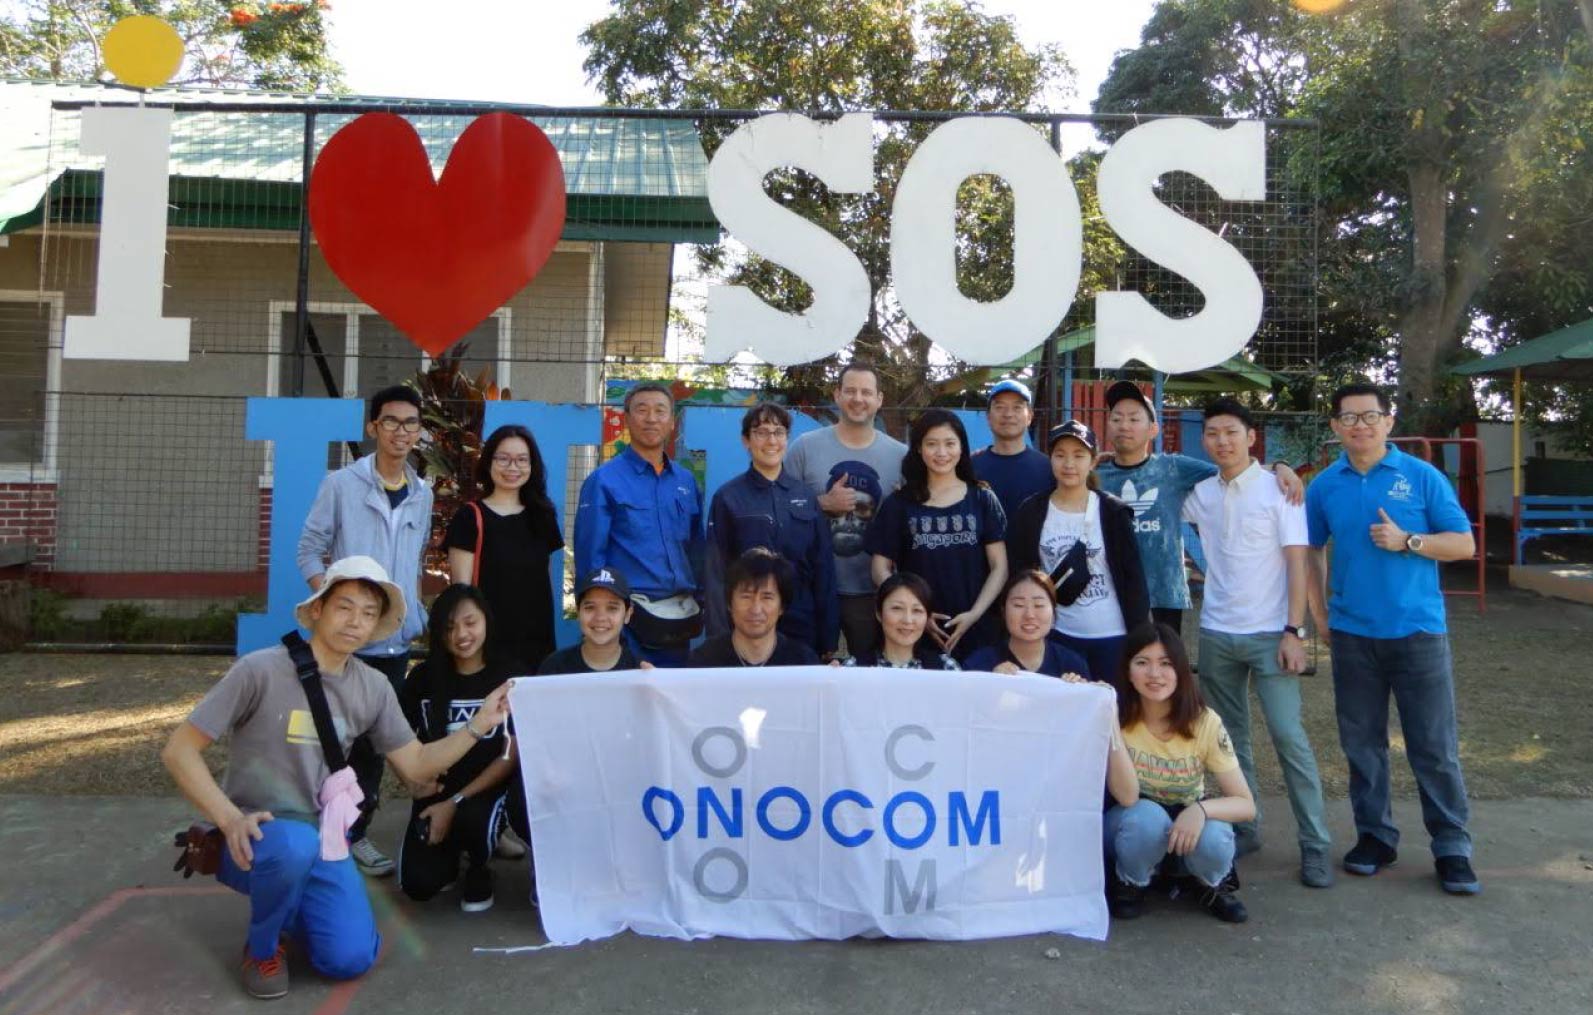 オノコムの旗を掲げるOOCOMEボランティアチーム